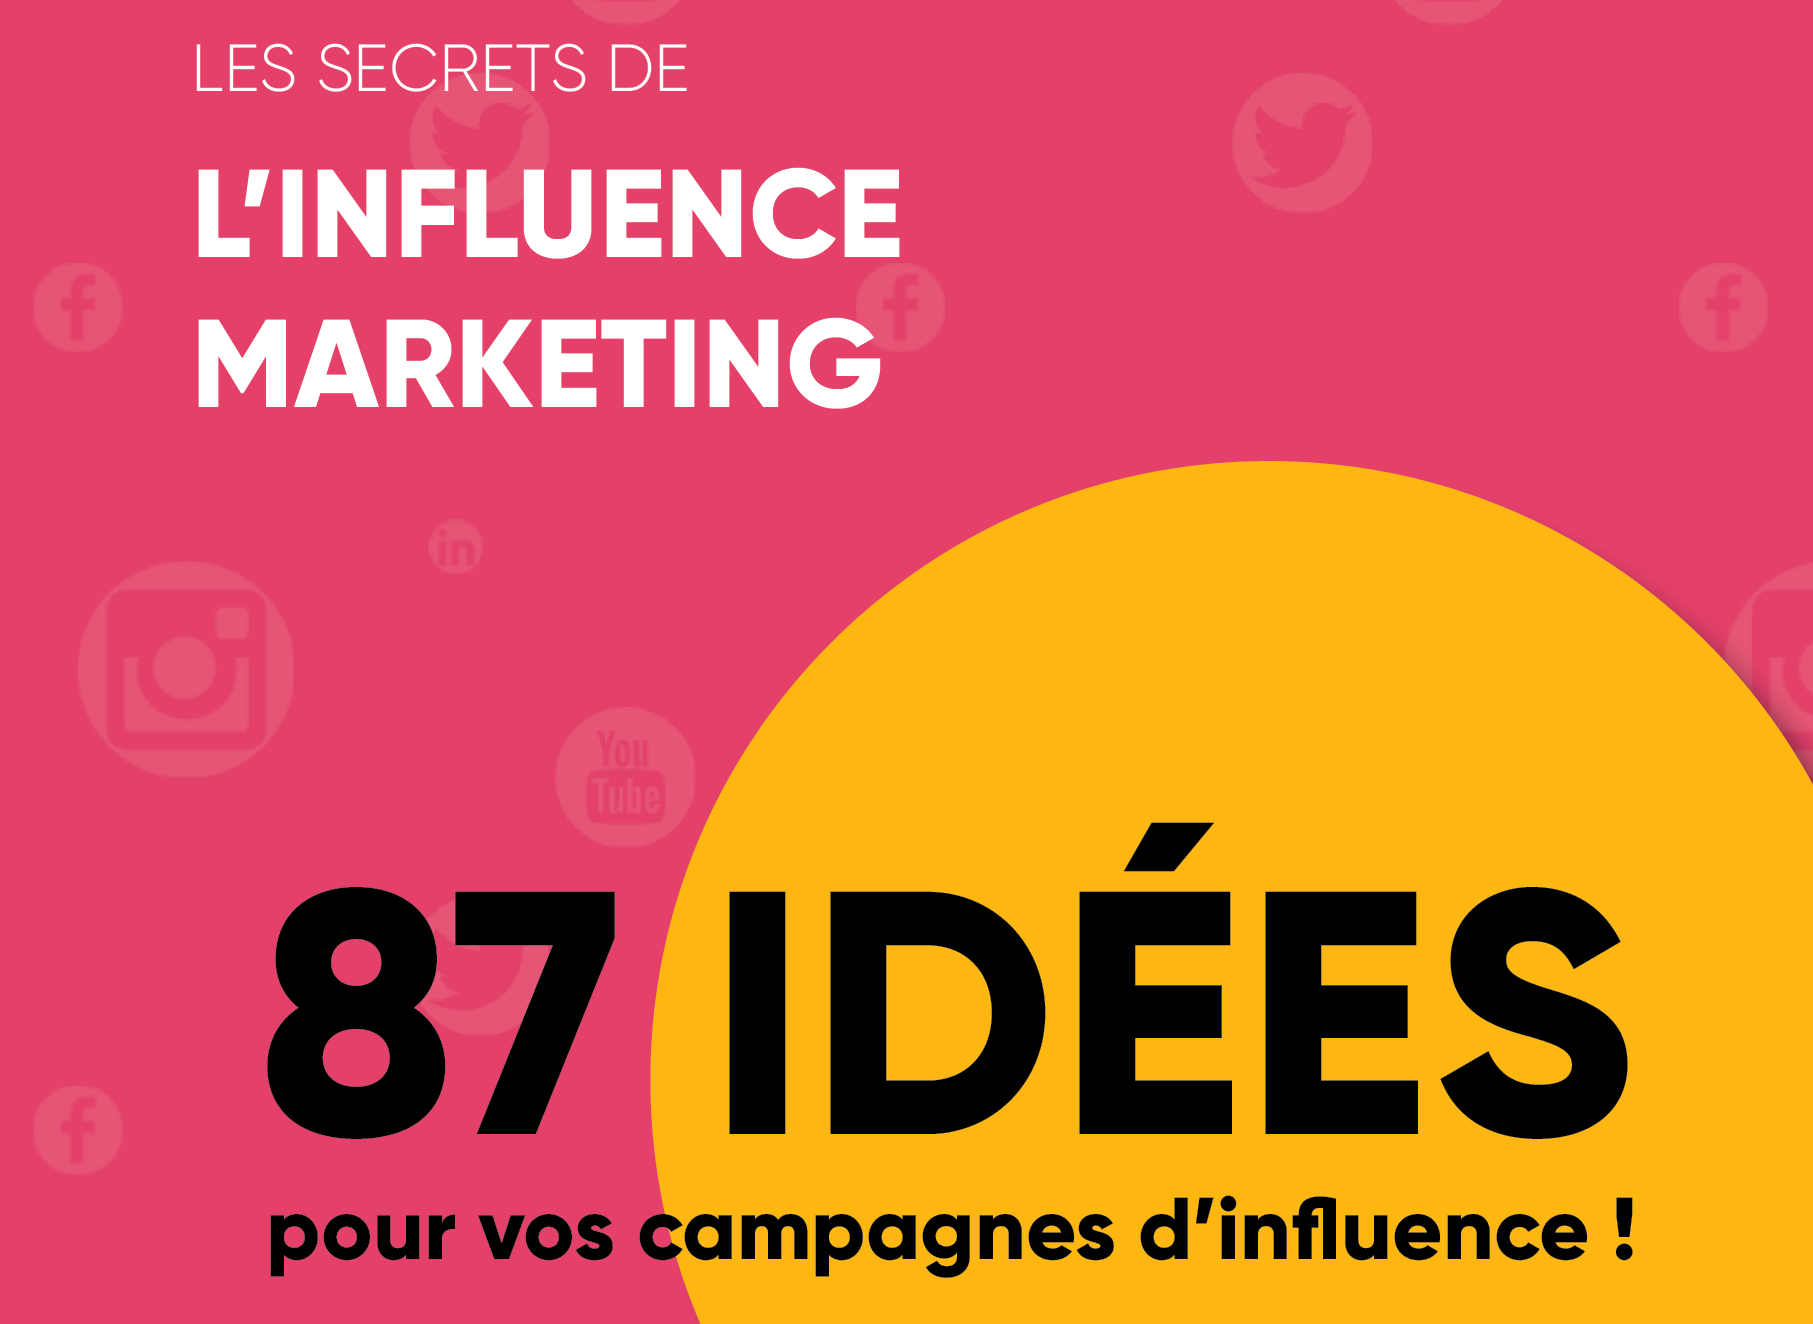 87 idées de campagnes d'influence